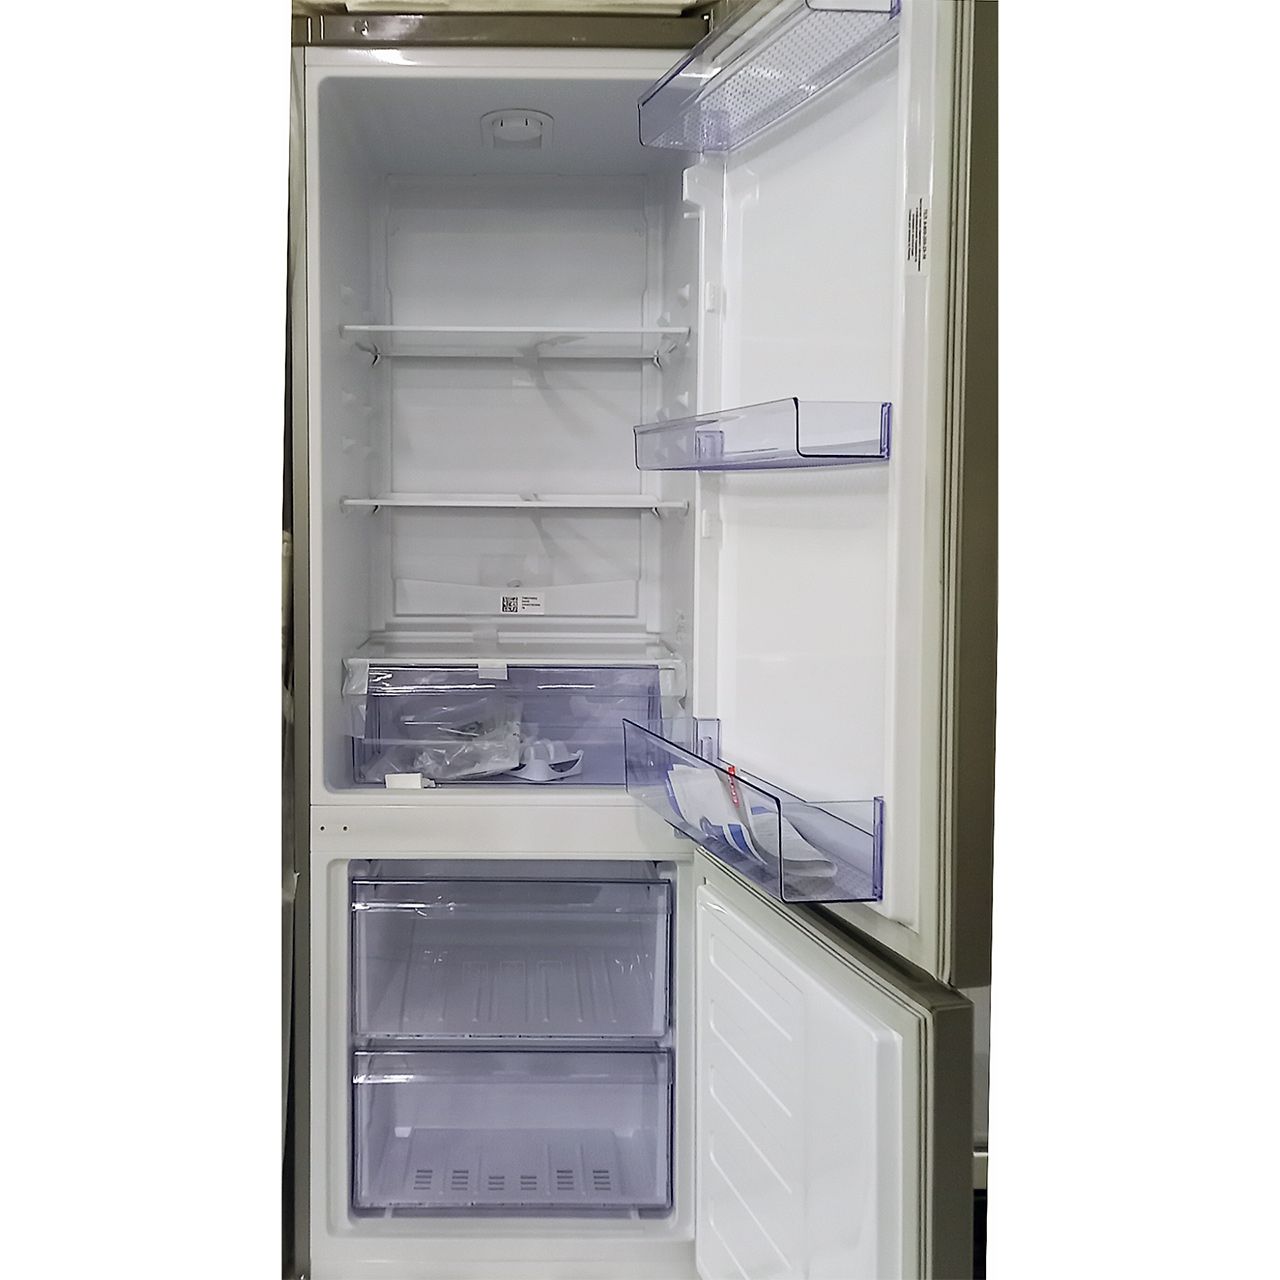 Холодильник двухкамерный Beko 240 литров